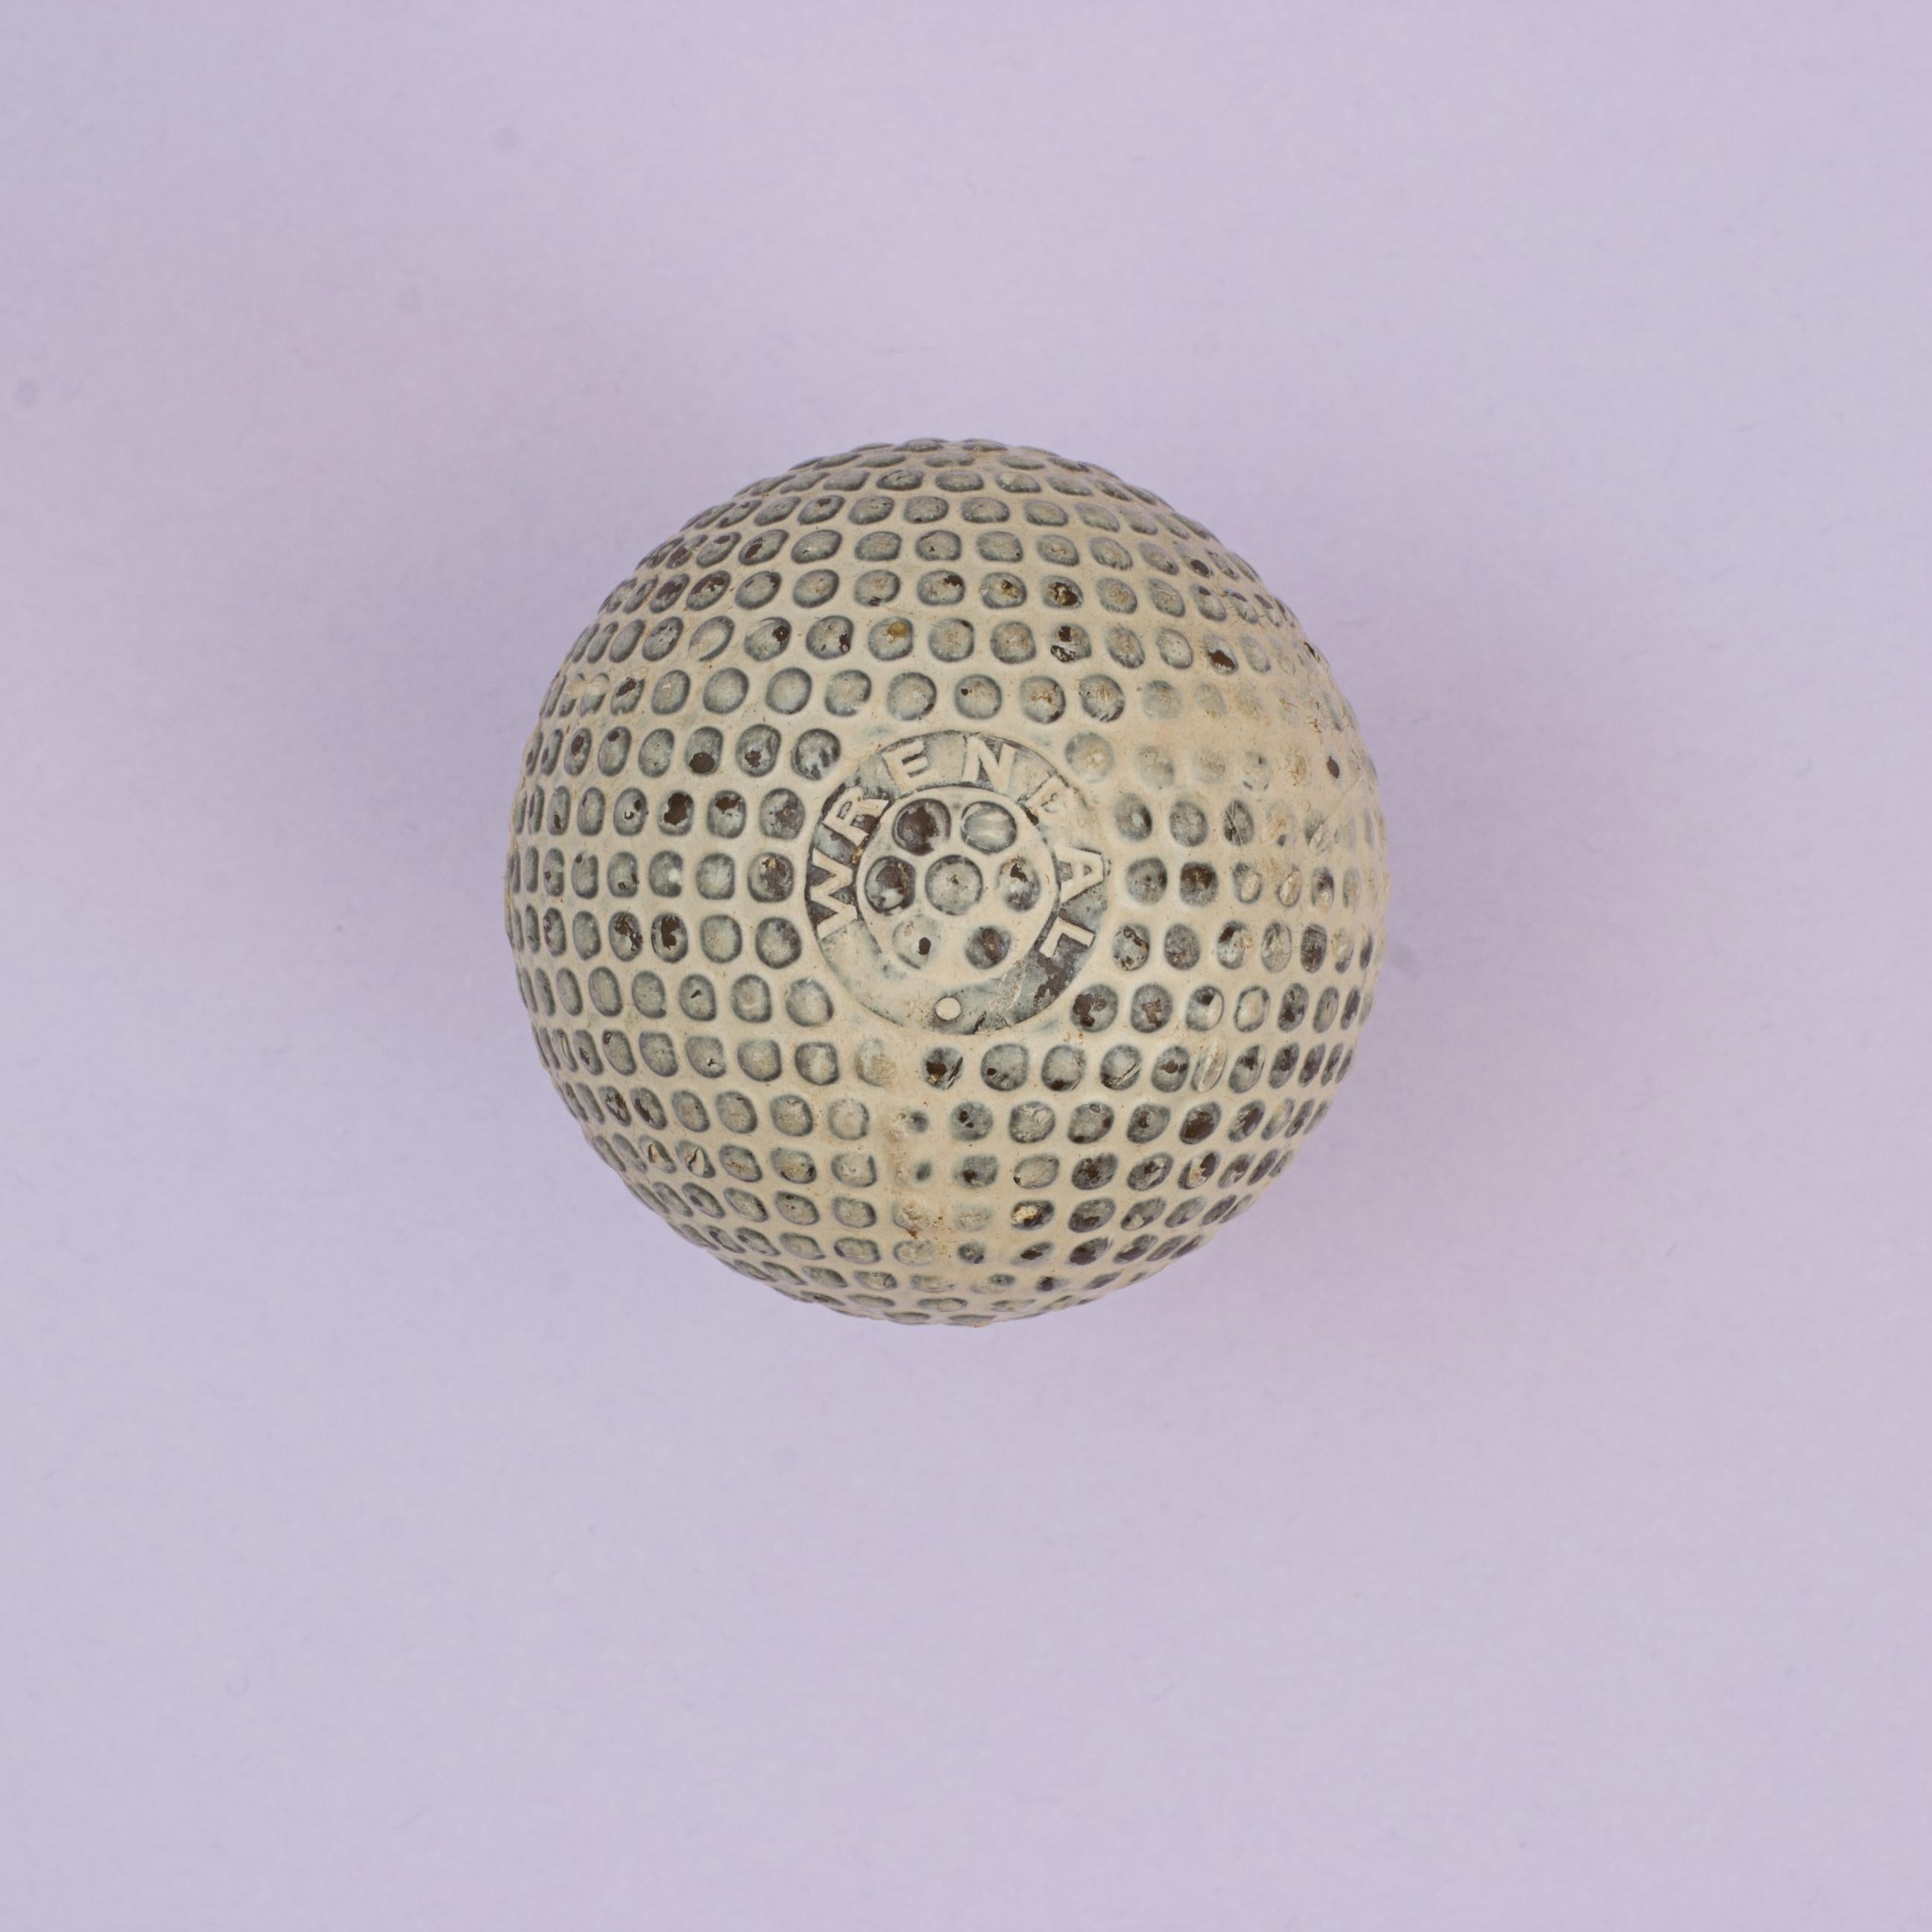 Seltener Wrendal Bramble Golfball.
Ein sehr schöner Golfball mit Brombeermuster und viel Farbe auf der Oberfläche. Der mit Guttapercha ummantelte Gummikern-Golfball mit dem seltenen Namen 